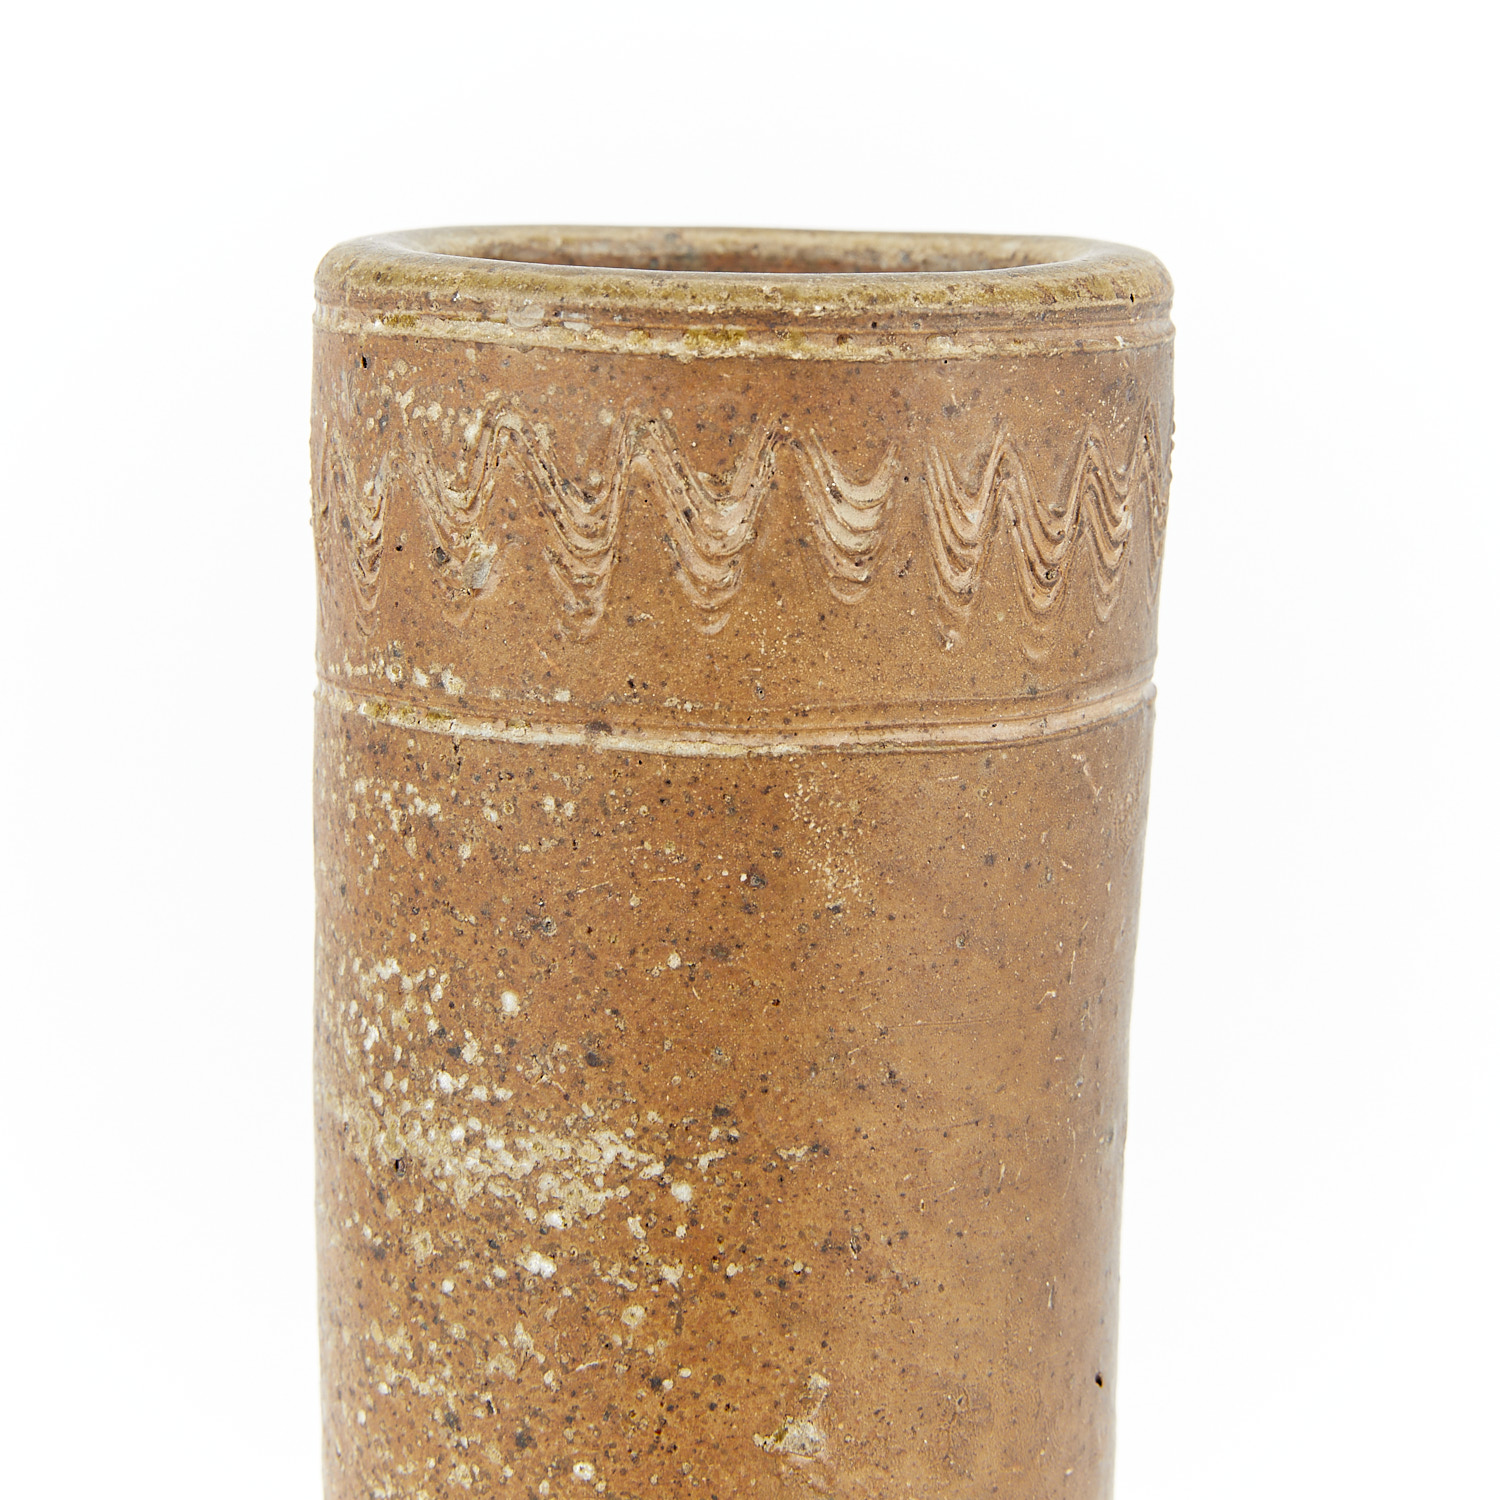 Chinese Han Touhu Ceramic Vase - Image 7 of 8